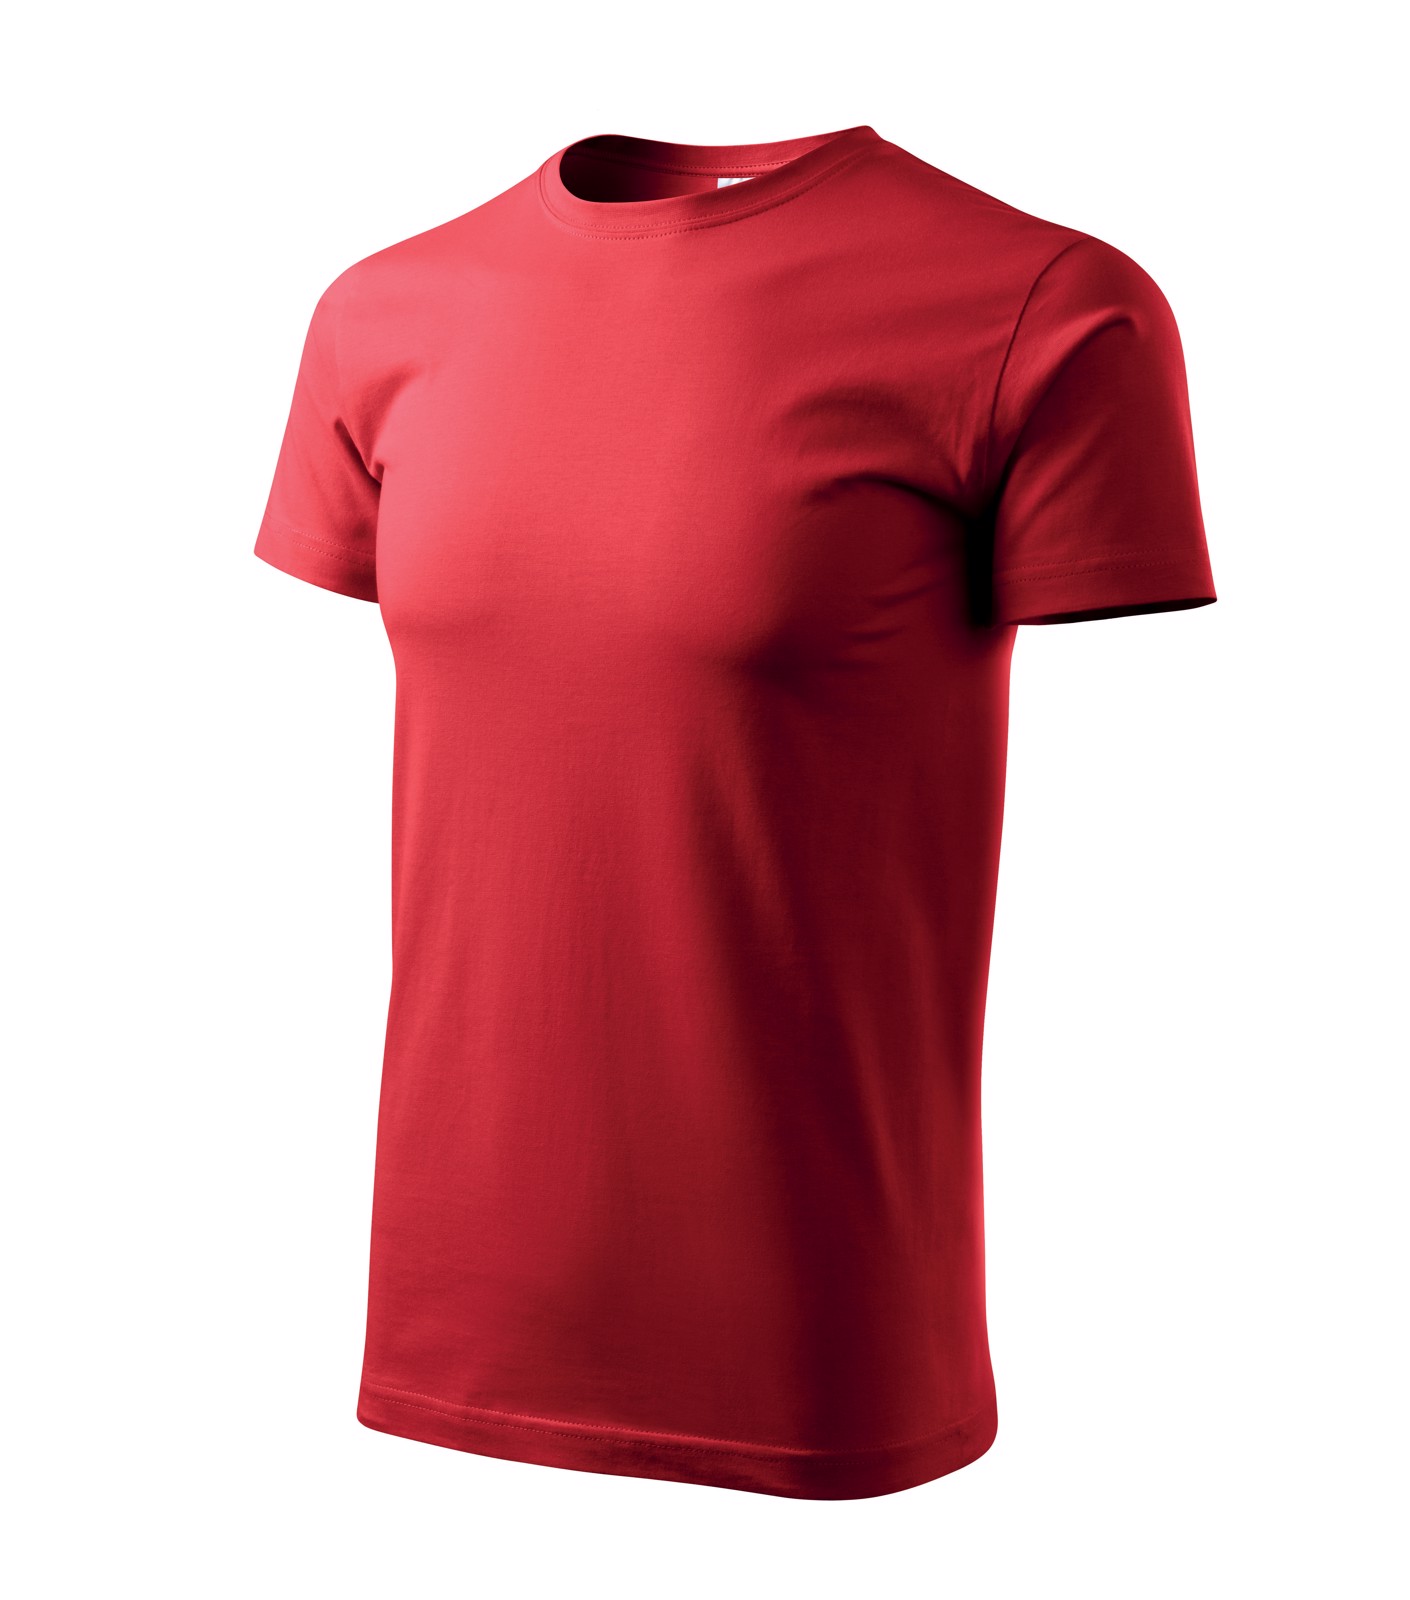 Tričko pánské Malfini Basic - Červená / L